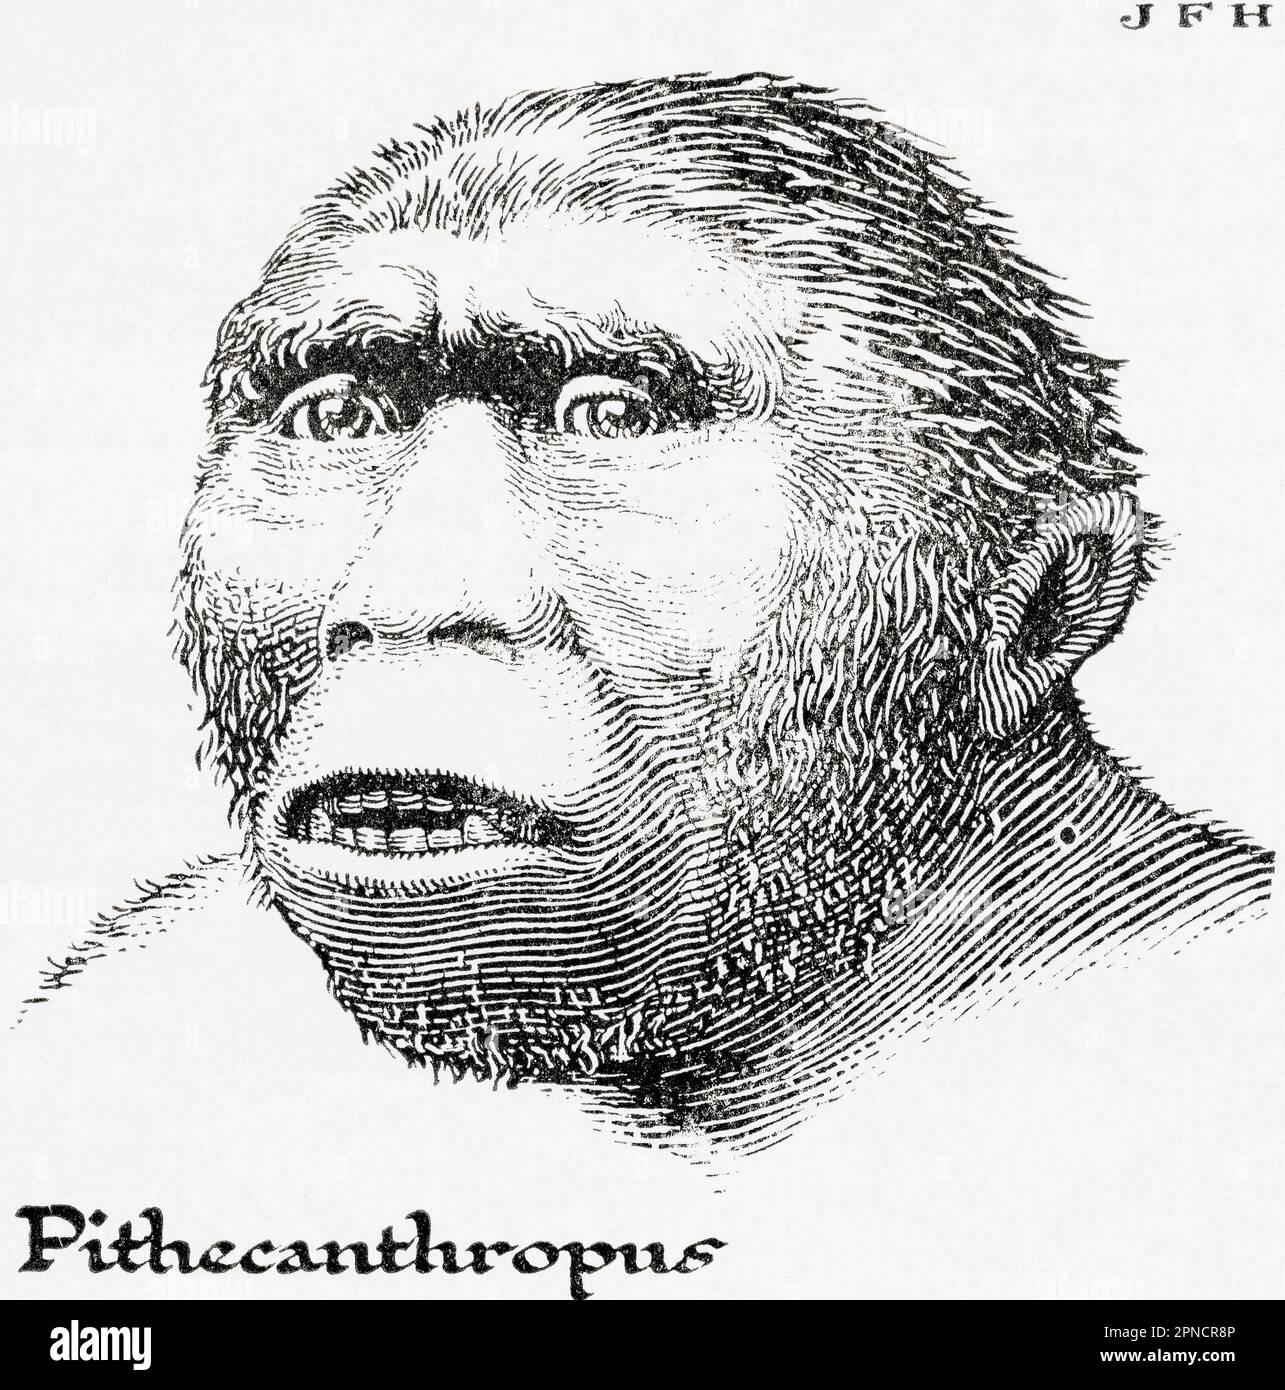 Java man, auch bekannt als Homo erectus erectus, früher auch Anthropopithecus erectus und Pithecanthropus erectus. Aus dem Buch Outline of History von H.G. Wells, veröffentlicht 1920. Stockfoto